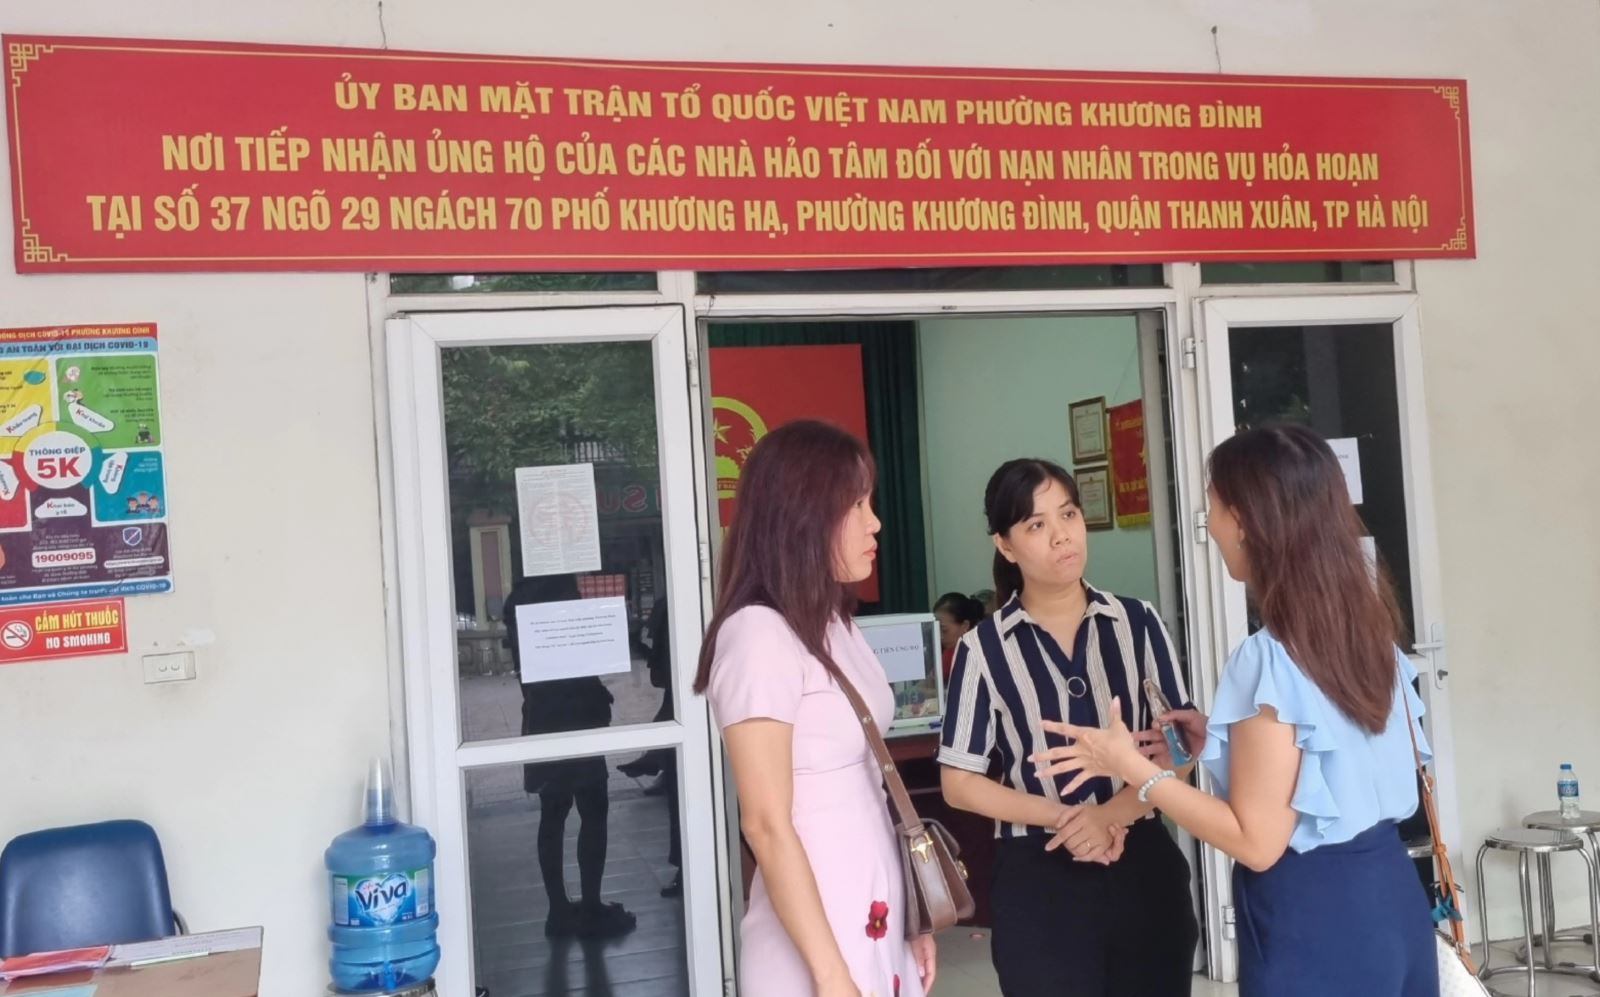 Chị Trần Phương Linh, Chủ tịch Ủy ban MTTQ phường Khương Đình, quận Thanh Xuân, Thành phố Hà Nội trò chuyện với những nhà hảo tâm đến ủng hộ cho các nạn nhân vụ cháy ccmn Khương Hạ.